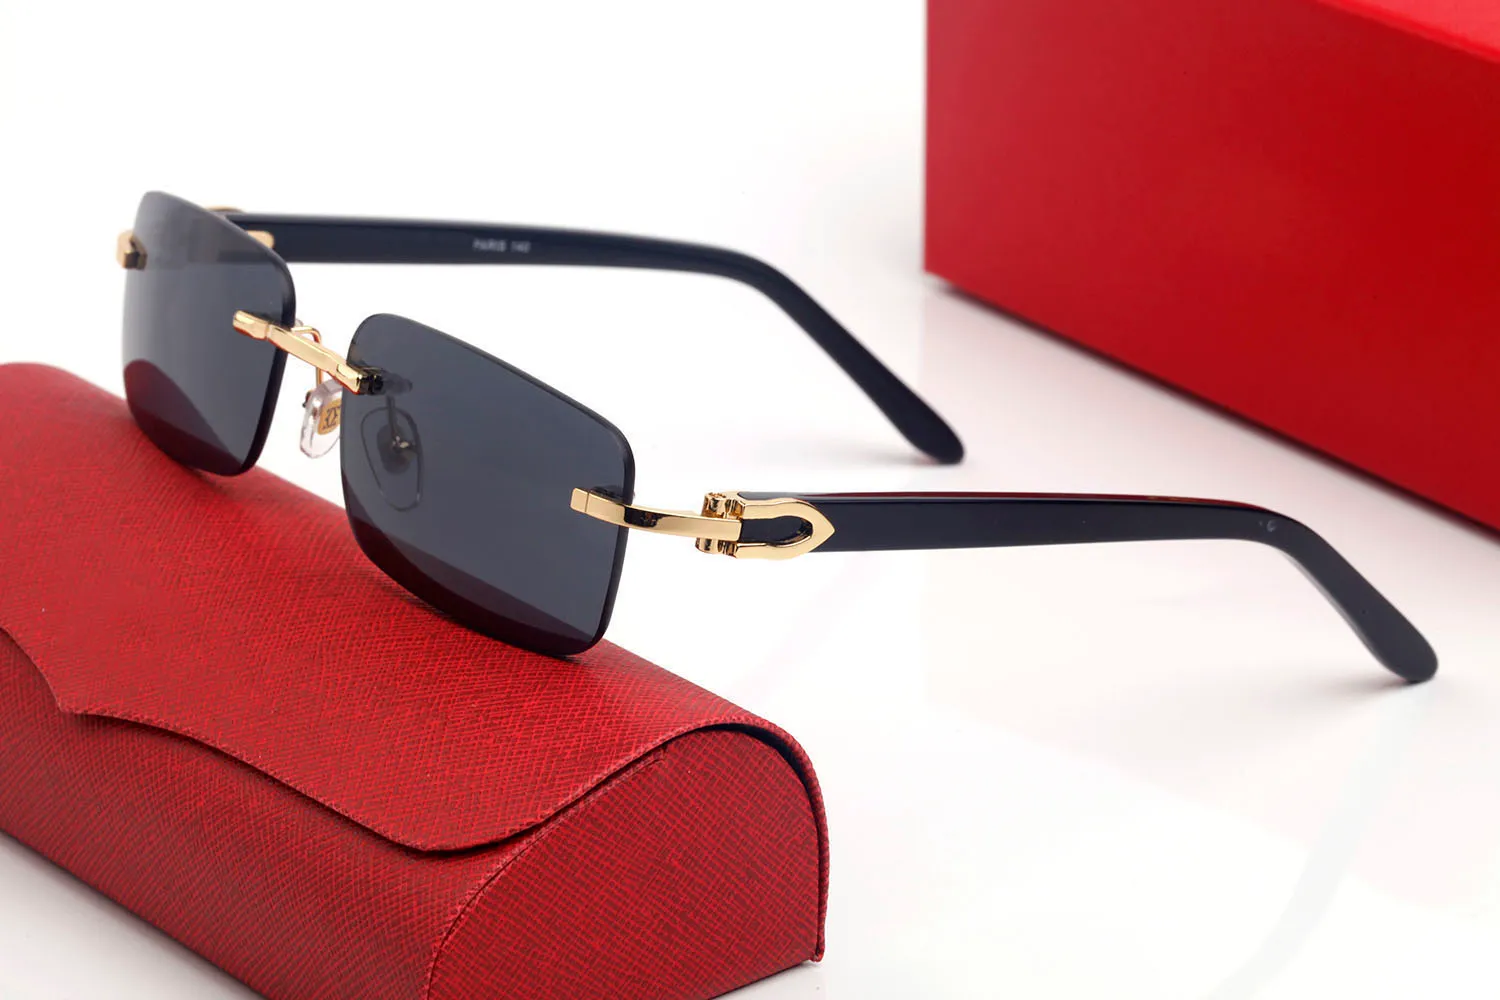 Clássico branco chifre de búfalo óculos de sol marcas design uv400 óculos metal ouro moldura de madeira feminino masculino polaroid bla306s